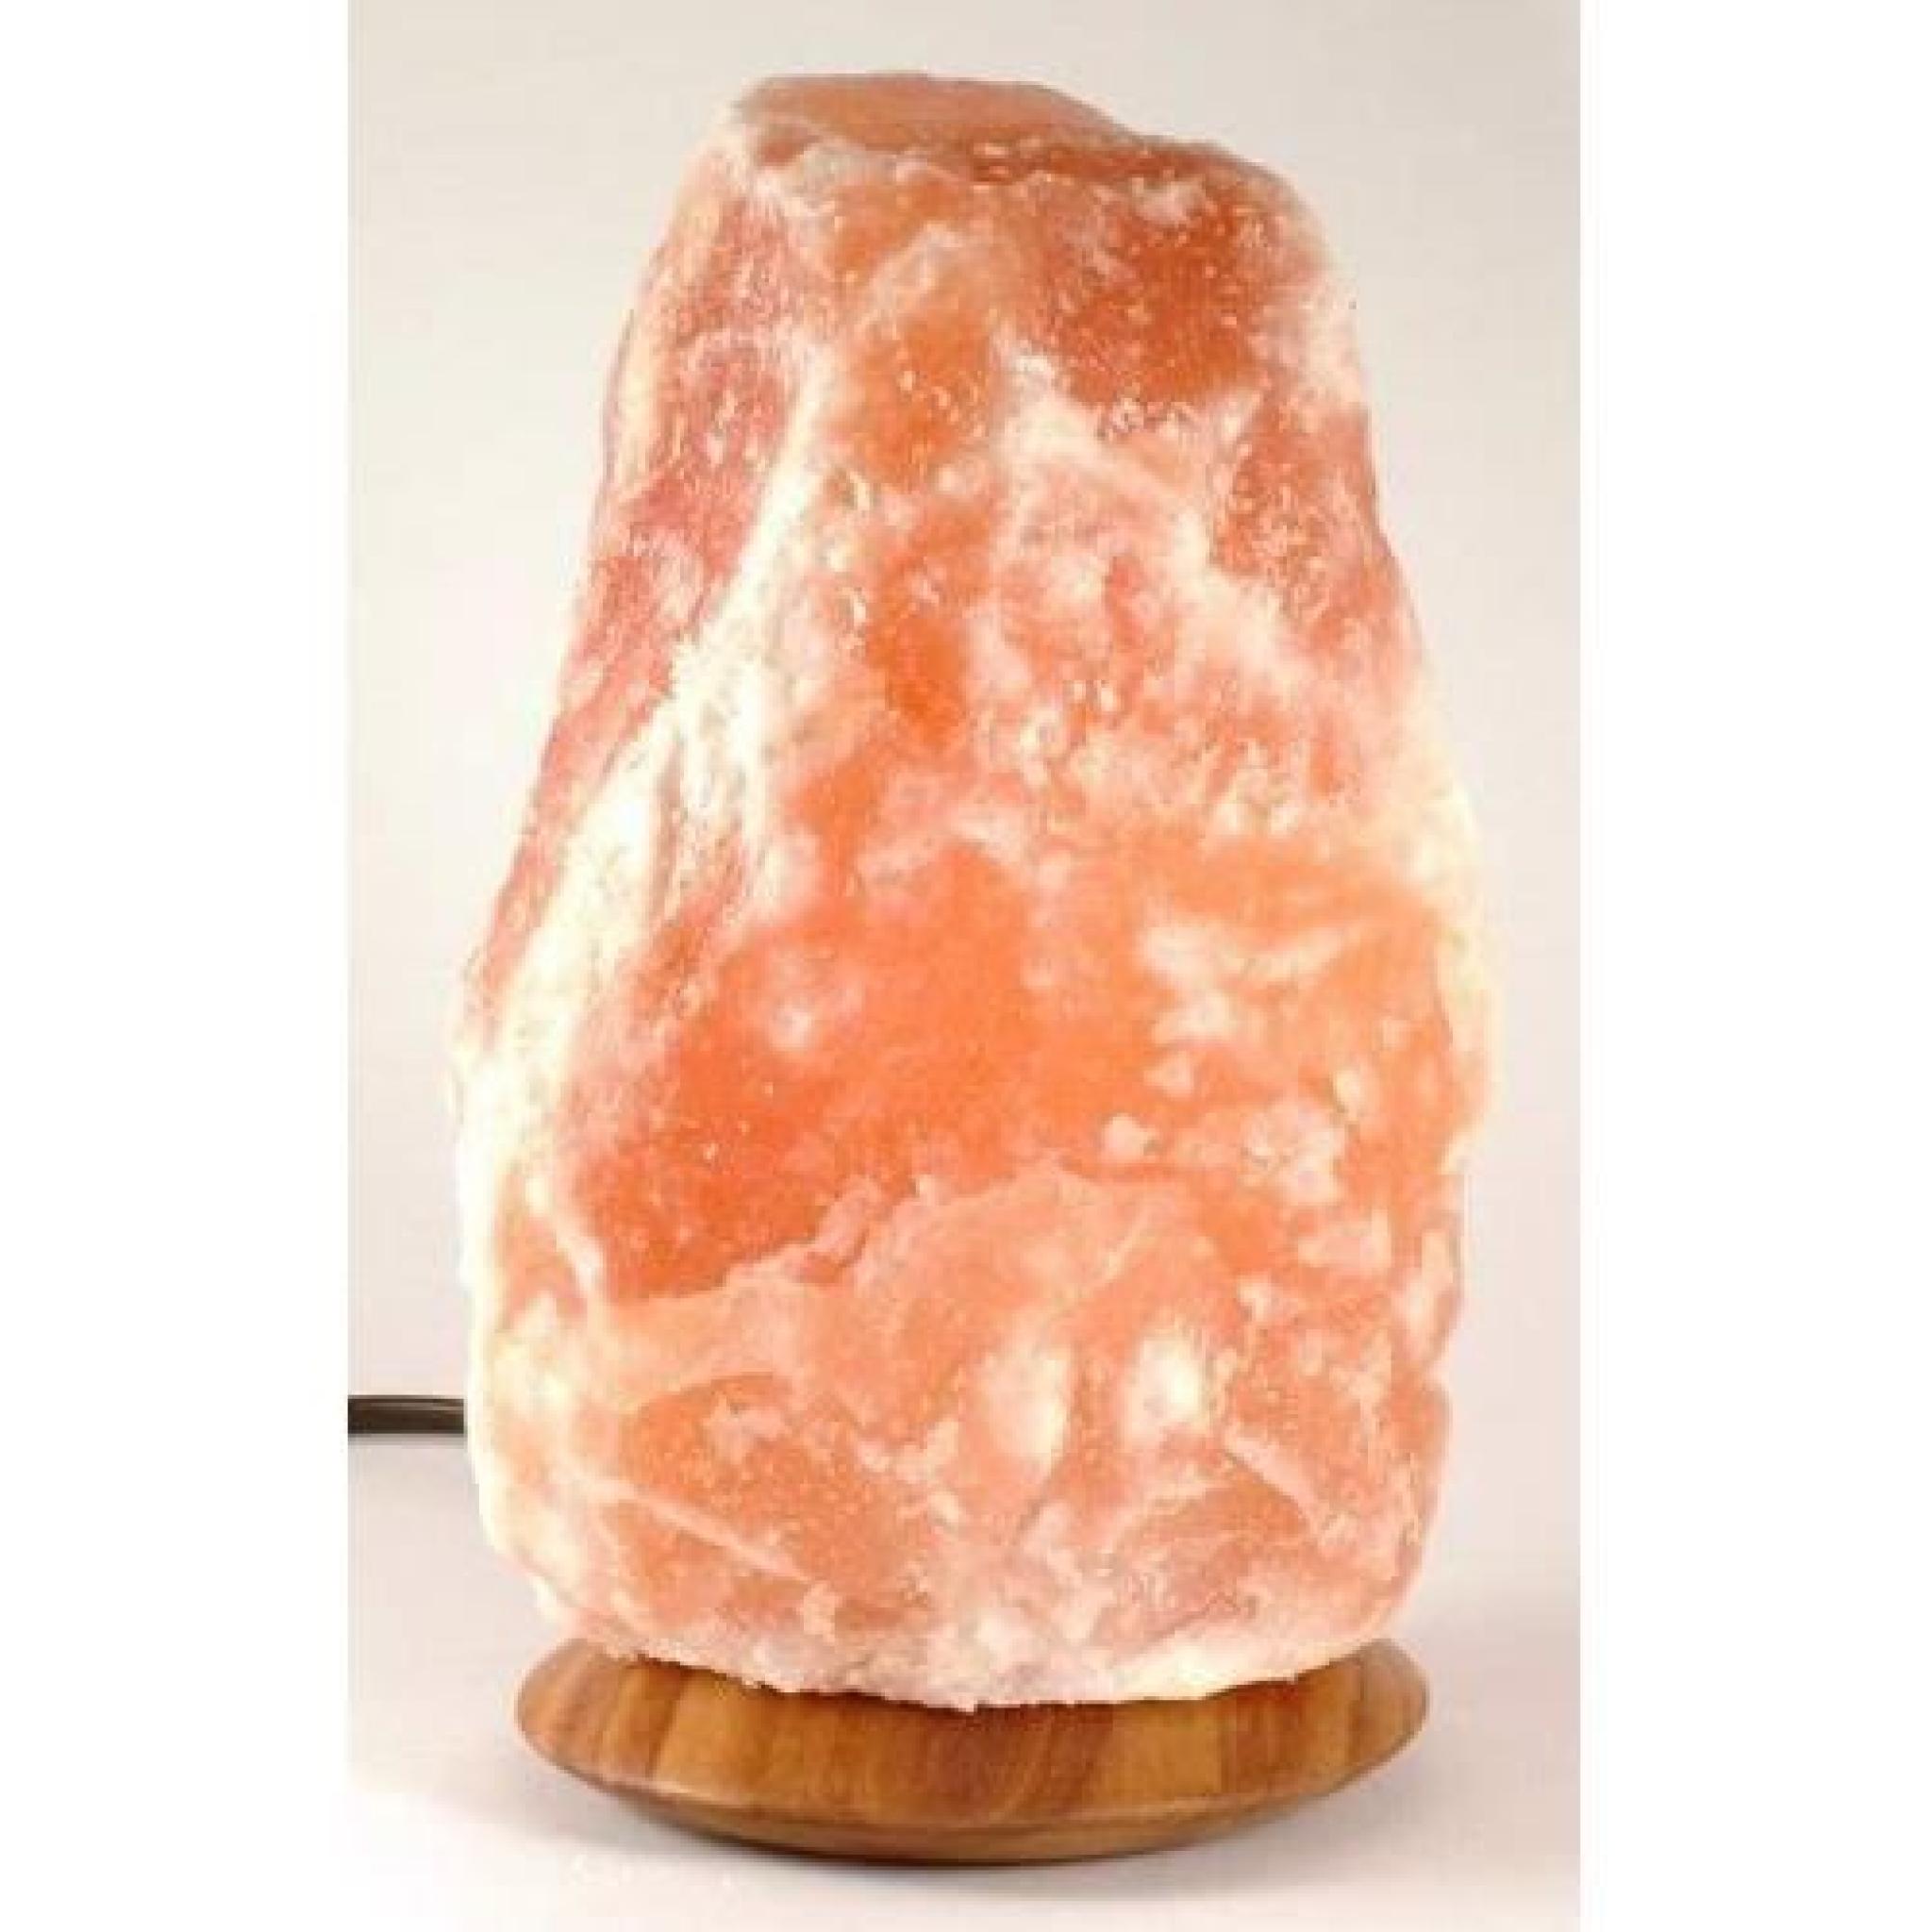 Lampe sel Himalaya véritable thérapeutique guérison santé 2 3 kg